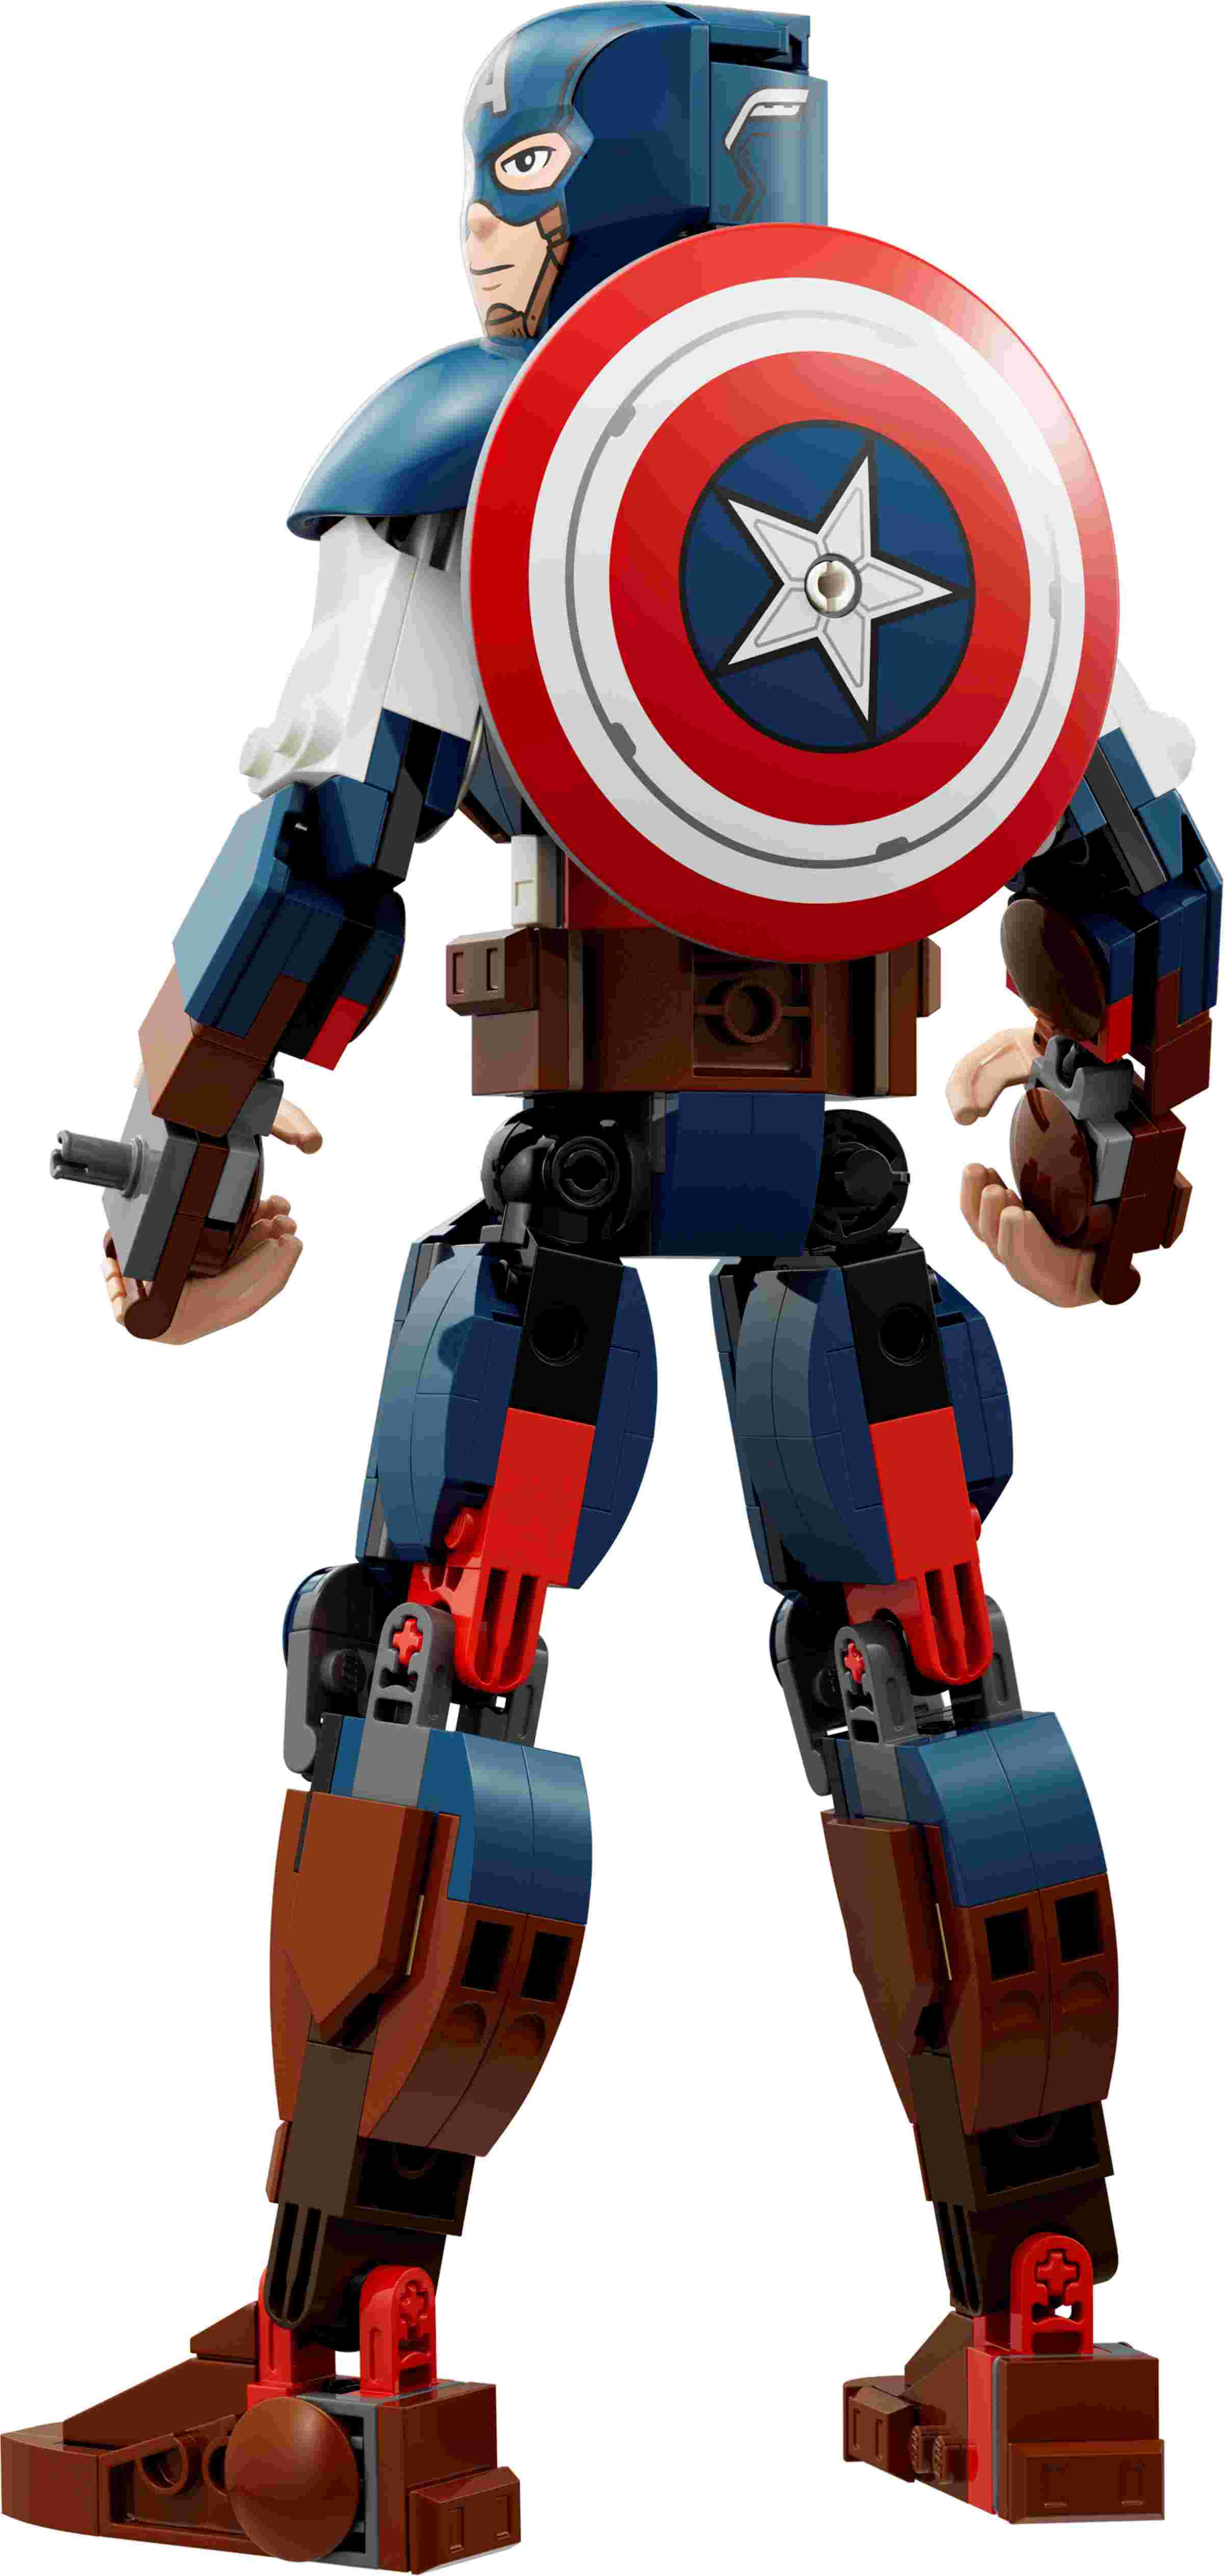 LEGO 76258 Marvel Captain America Baufigur, Superheld mit Schild